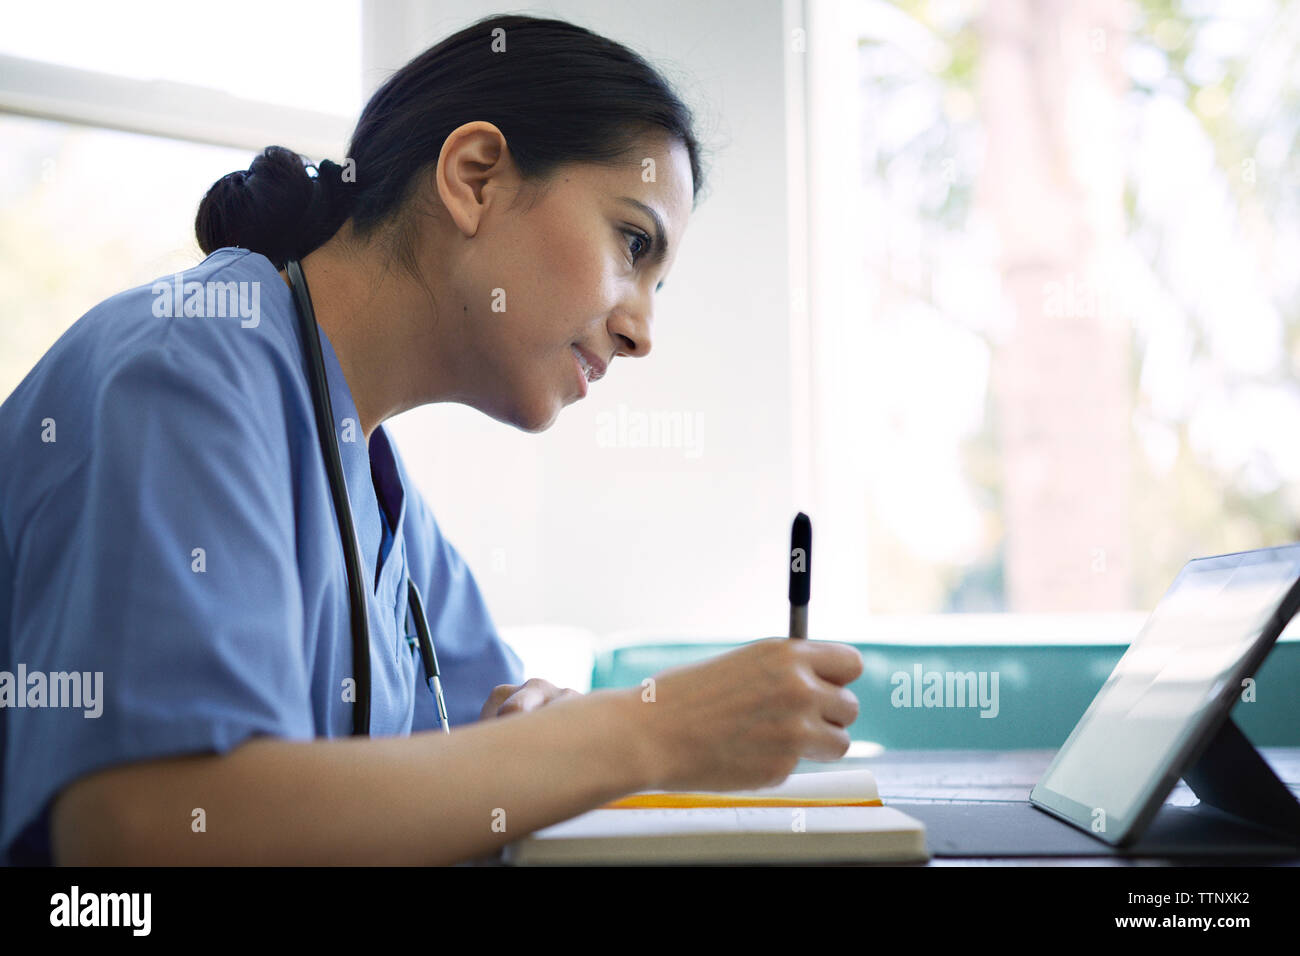 Vue latérale du doctor using tablet computer tout en travaillant dans une clinique médicale Banque D'Images